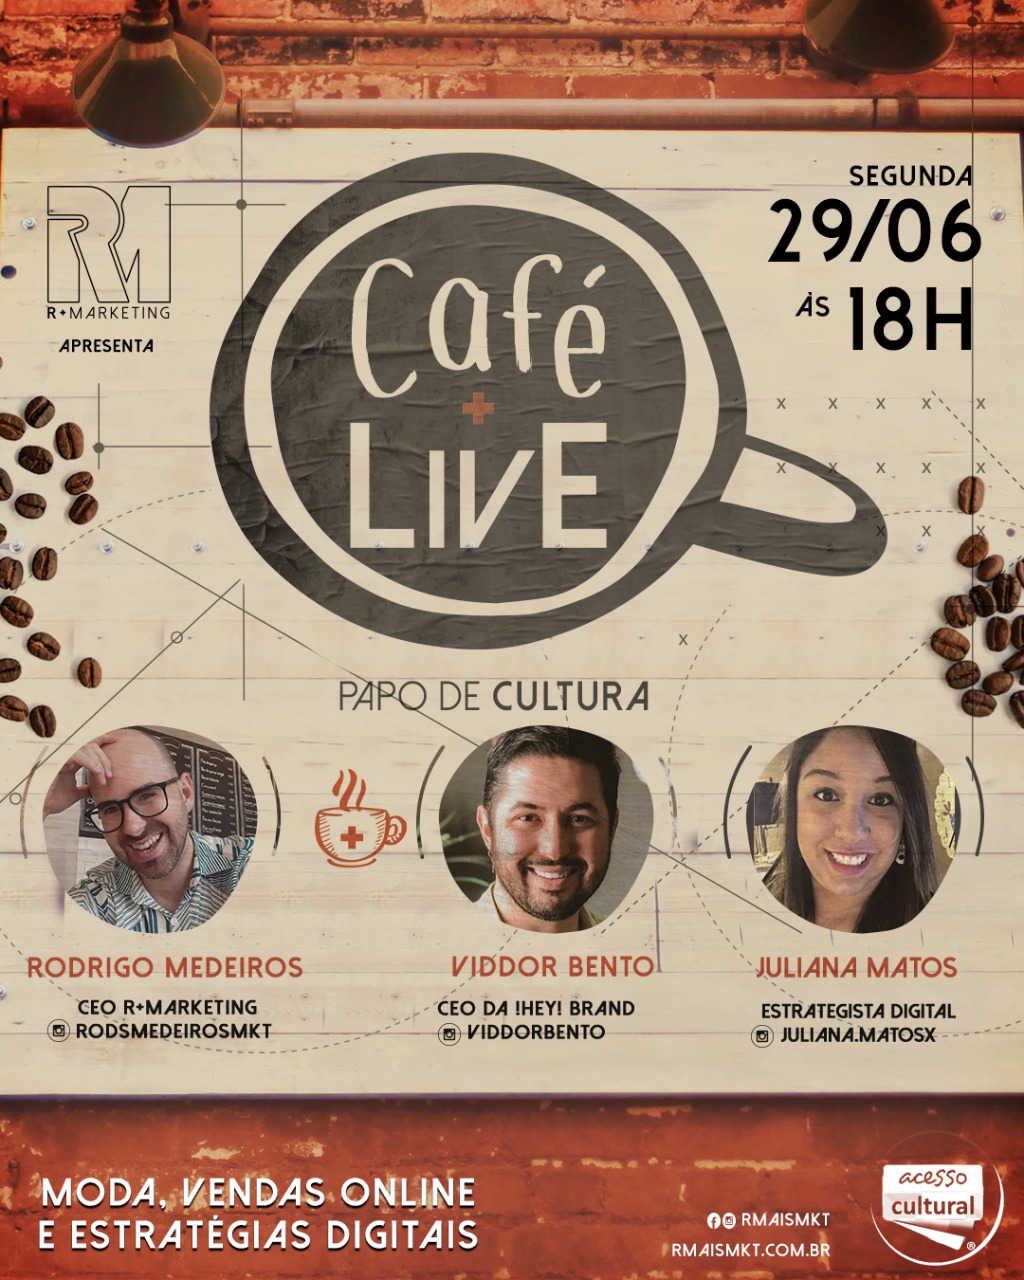 Viddor Bento + Juliana Matos  são os convidados de hoje do projeto CAFÉ + LivE ! - Papo de Cultura